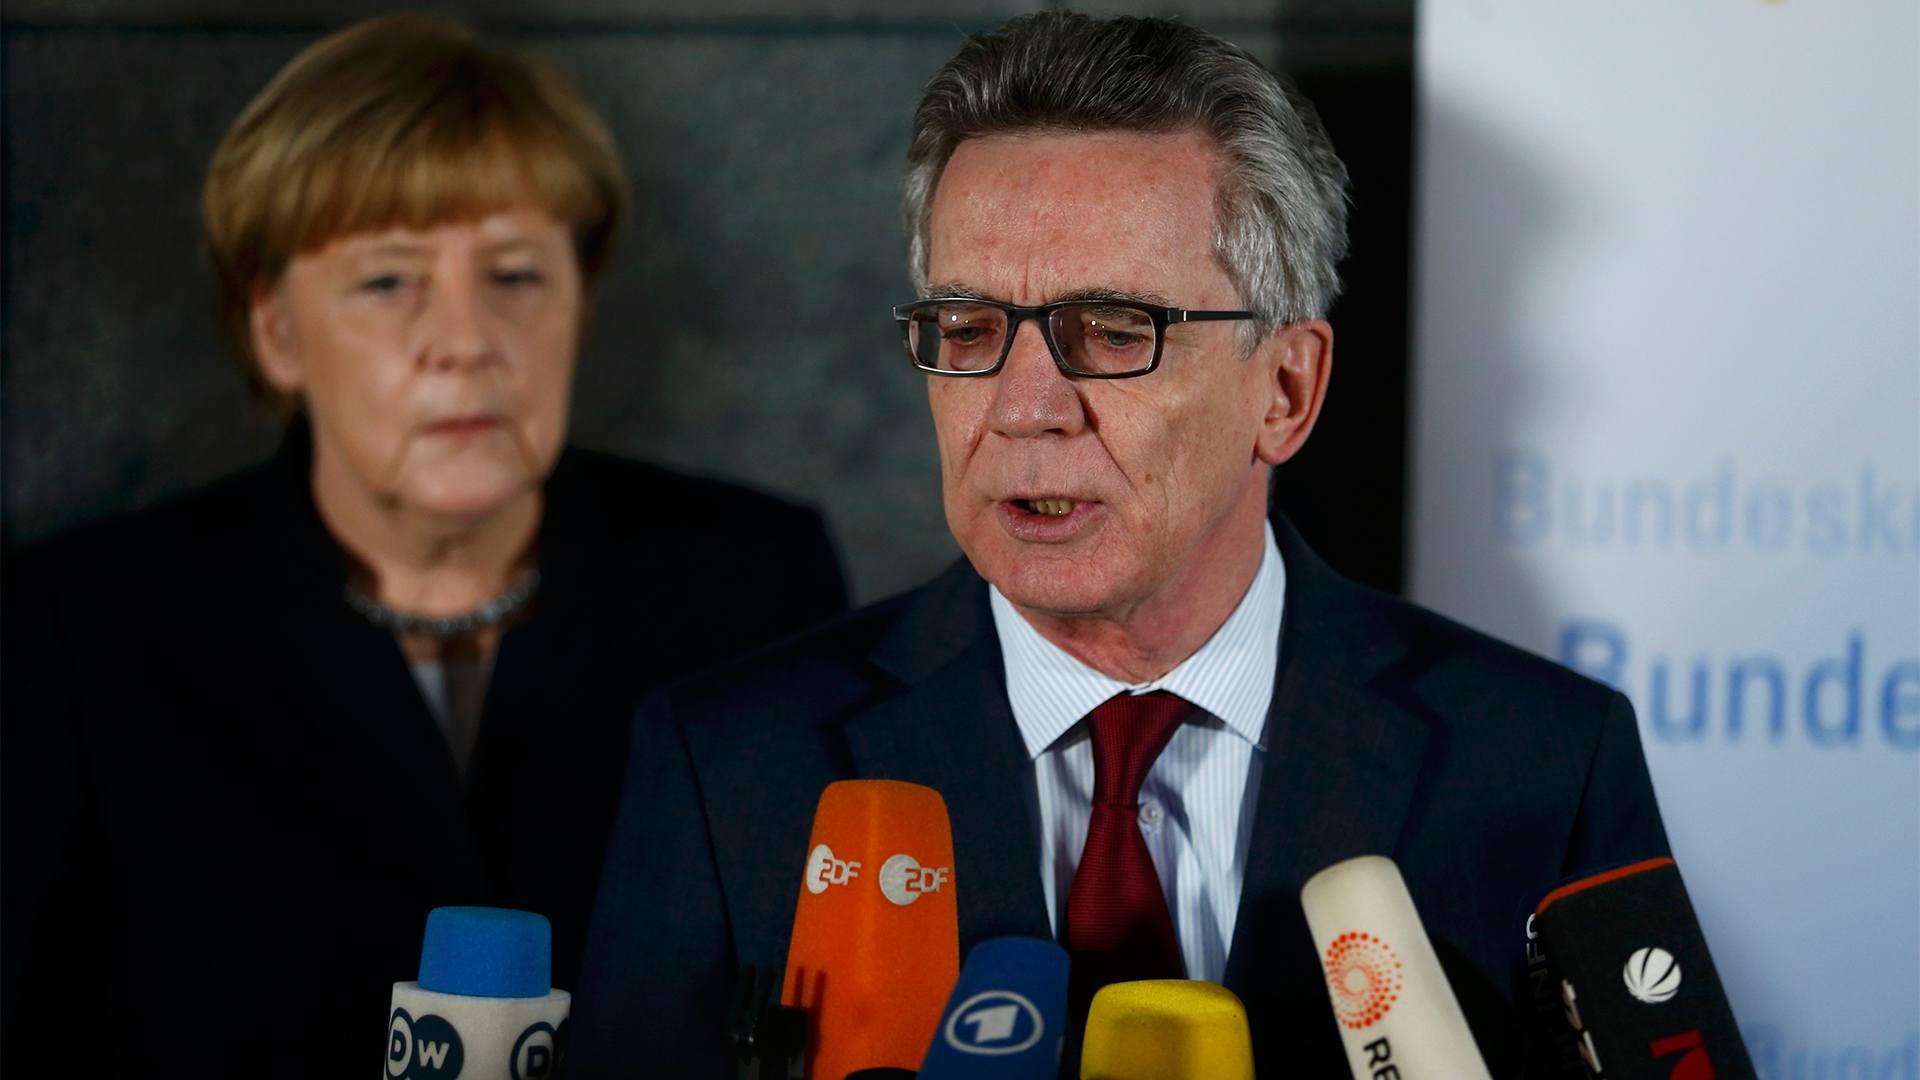 De Maizière und Merkel bei der Pressekonferenz | Bildquelle: REUTERS